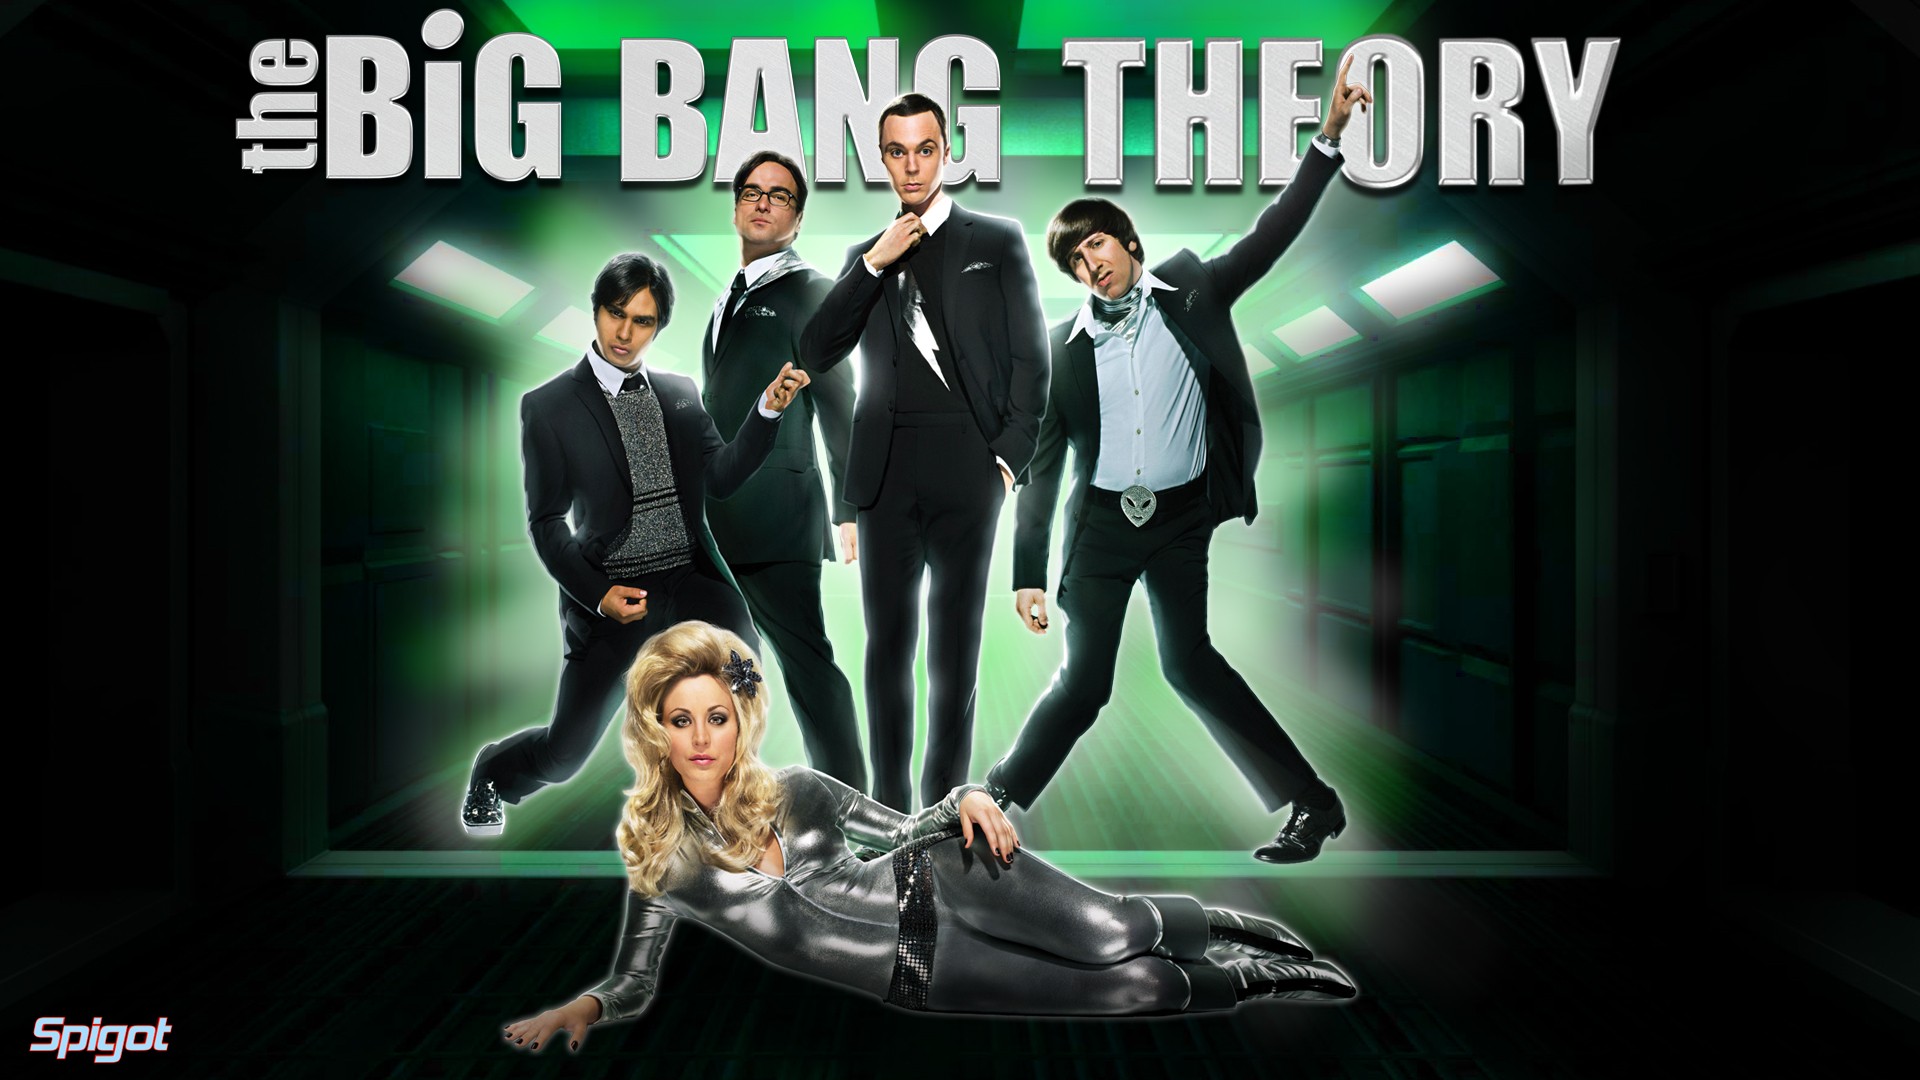 The Big Bang Theory HD Wallpaper Of Movie